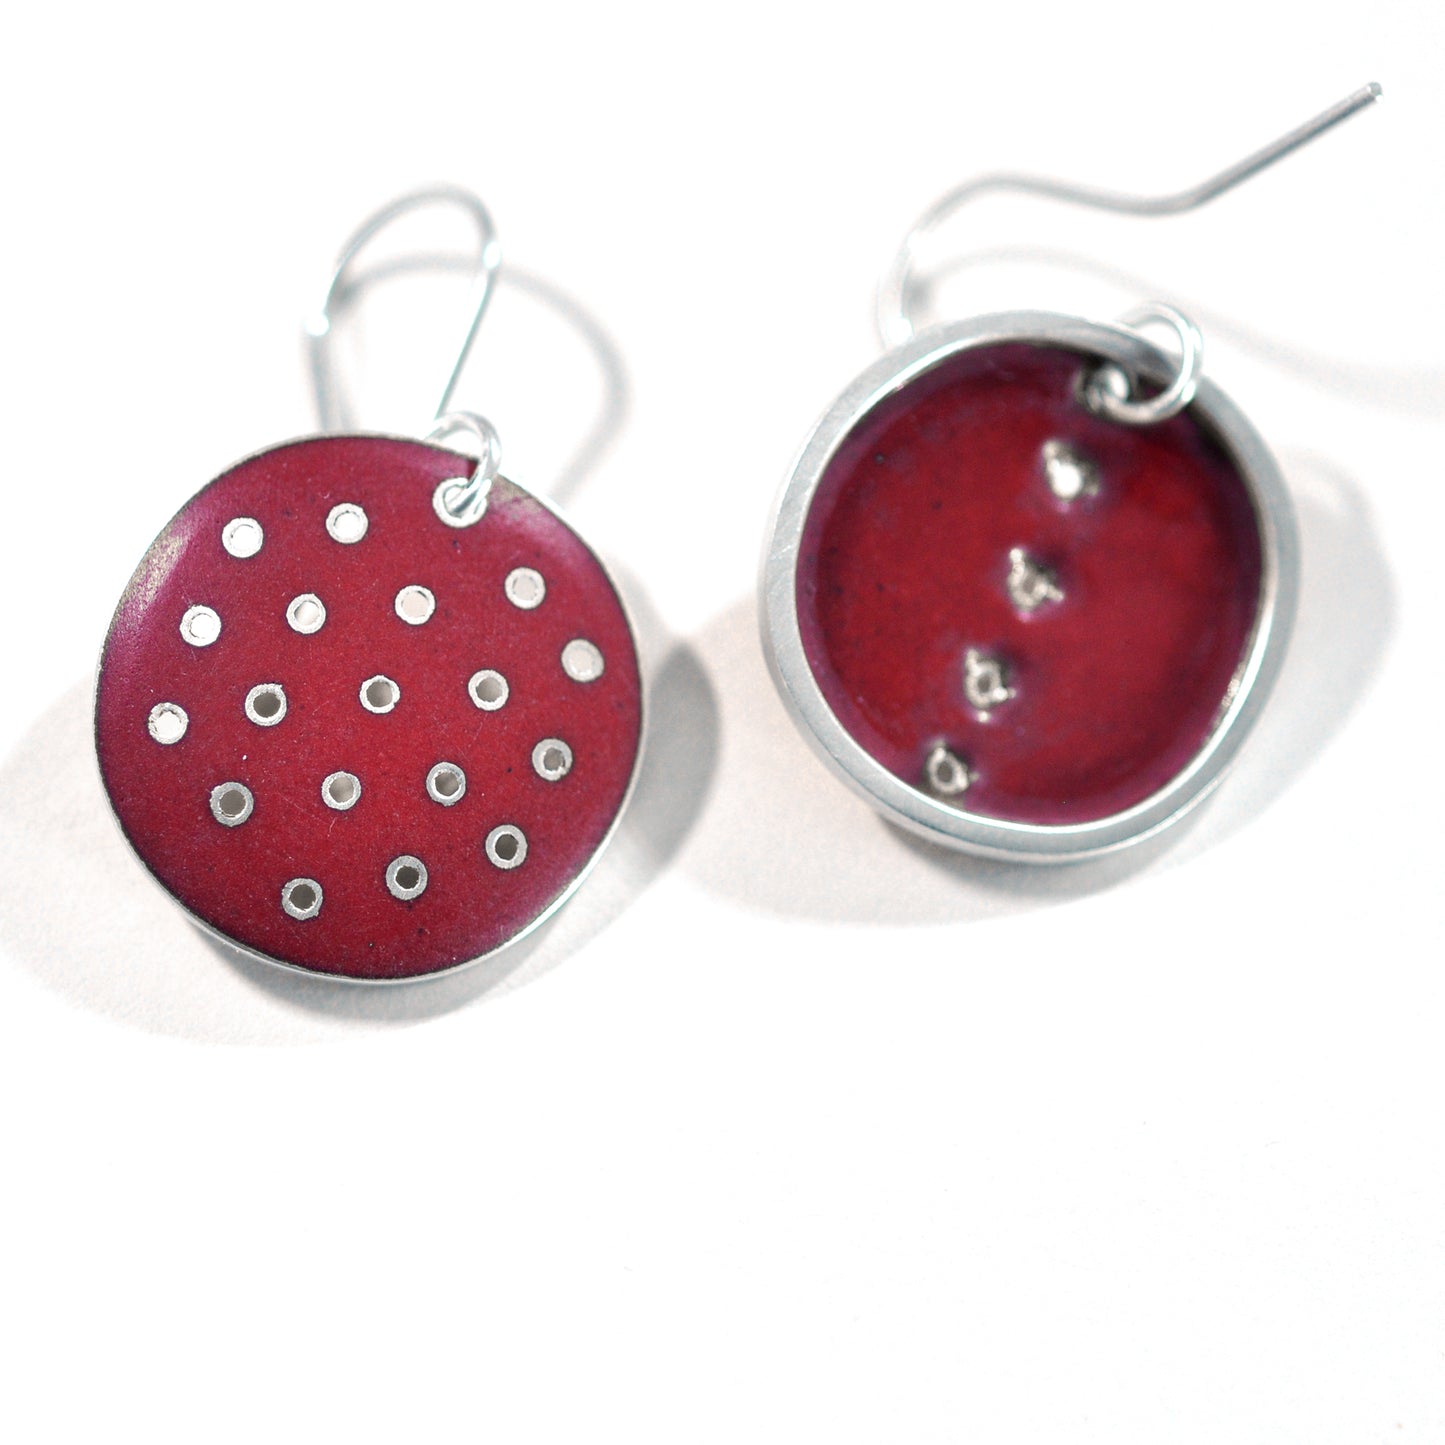 Red polka-dot earrings, odd-pair